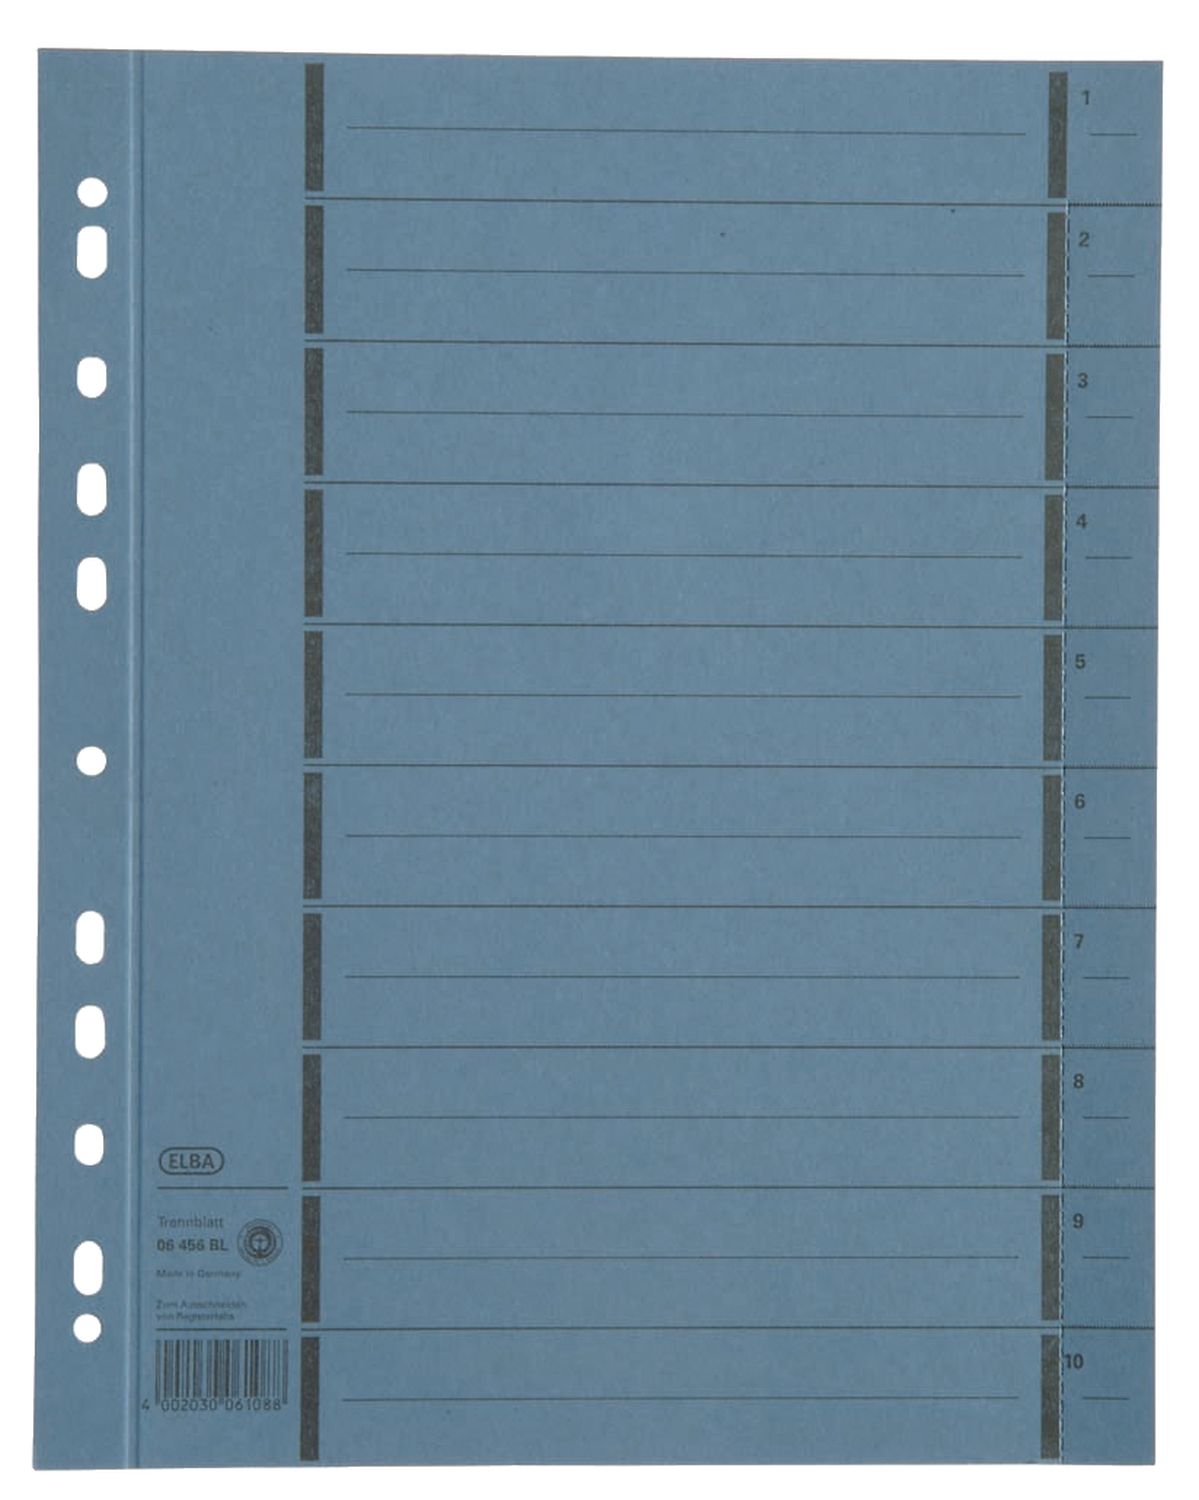 Trennblätter mit Perforation - A4 Überbreite, blau, 100 Stück